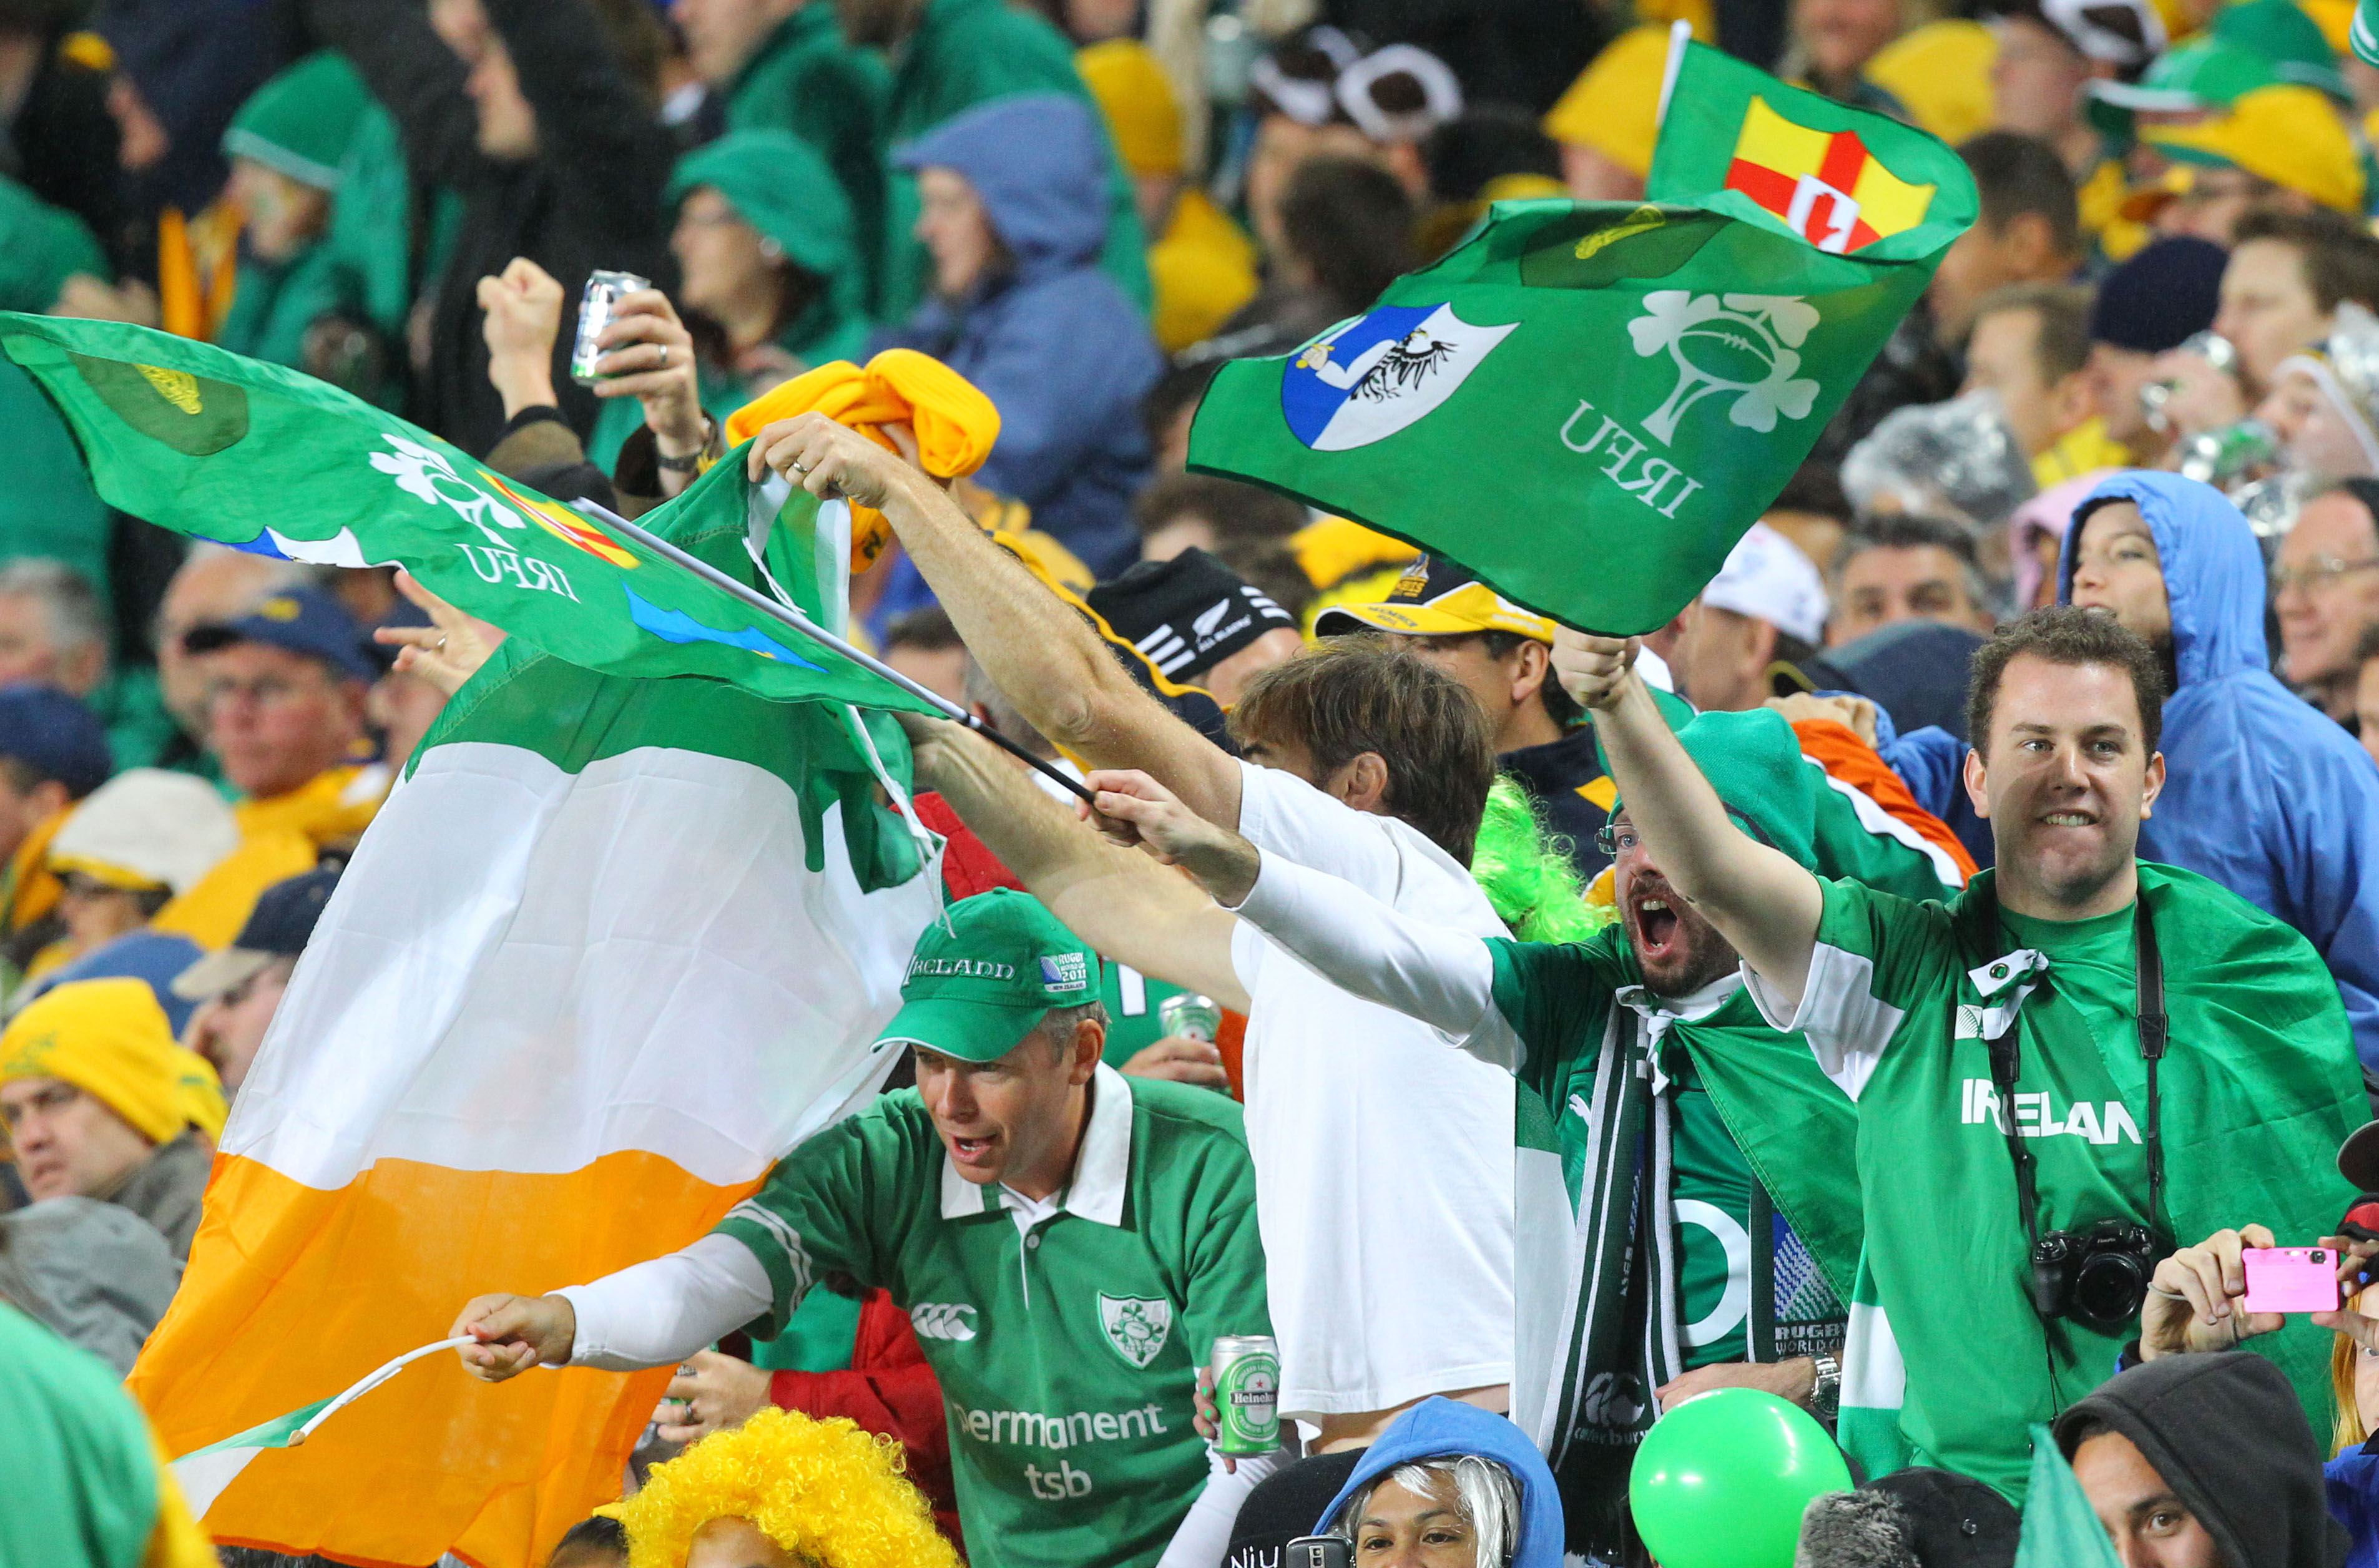 Det senaste mästerskapet Irland spelade var VM 2002 då de åkte på respass mot Spanien i åttondelsfinalen.